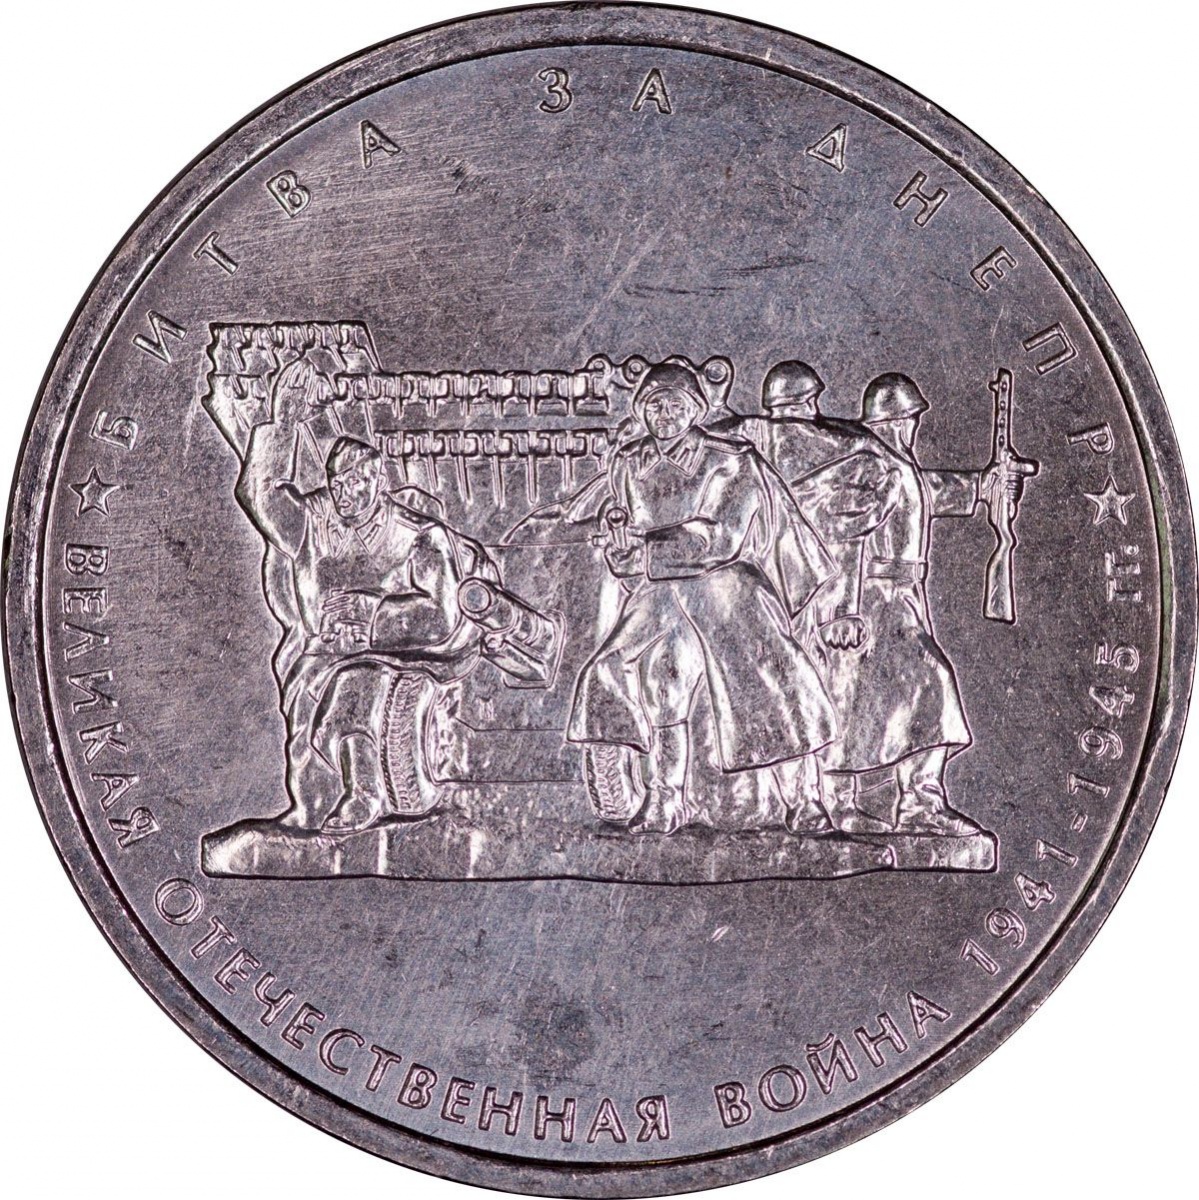 5 рублей медные. Монета 5 рублей битва за Днепр. 5 Рублей 2014 года битва за Днепр цена стоимость монеты.